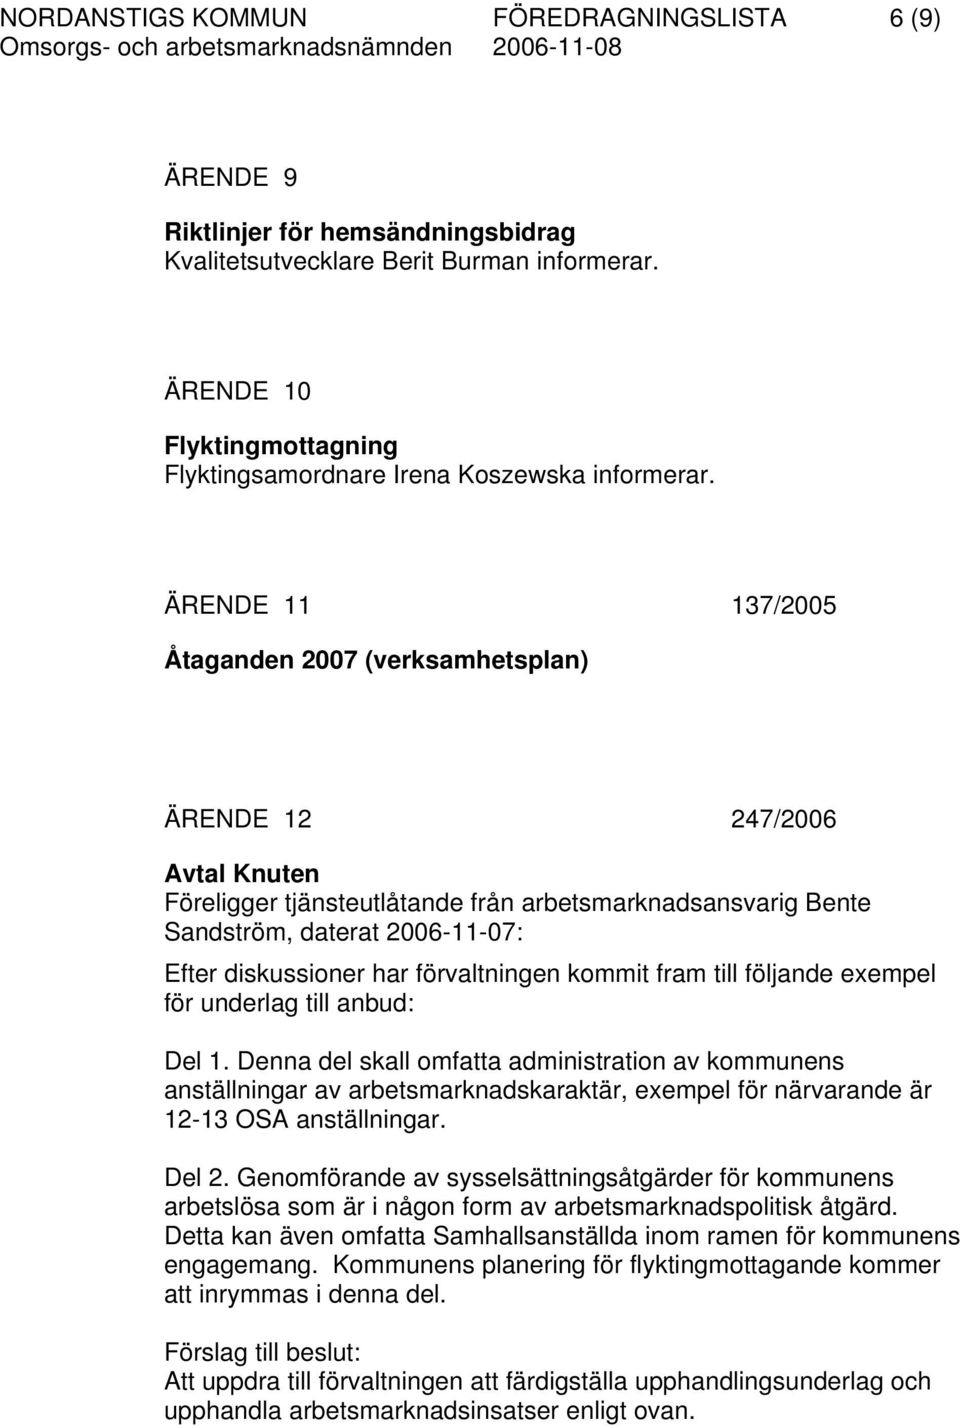 ÄRENDE 11 137/2005 Åtaganden (verksamhetsplan) ÄRENDE 12 247/2006 Avtal Knuten Föreligger tjänsteutlåtande från arbetsmarknadsansvarig Bente Sandström, daterat 2006-11-07: Efter diskussioner har